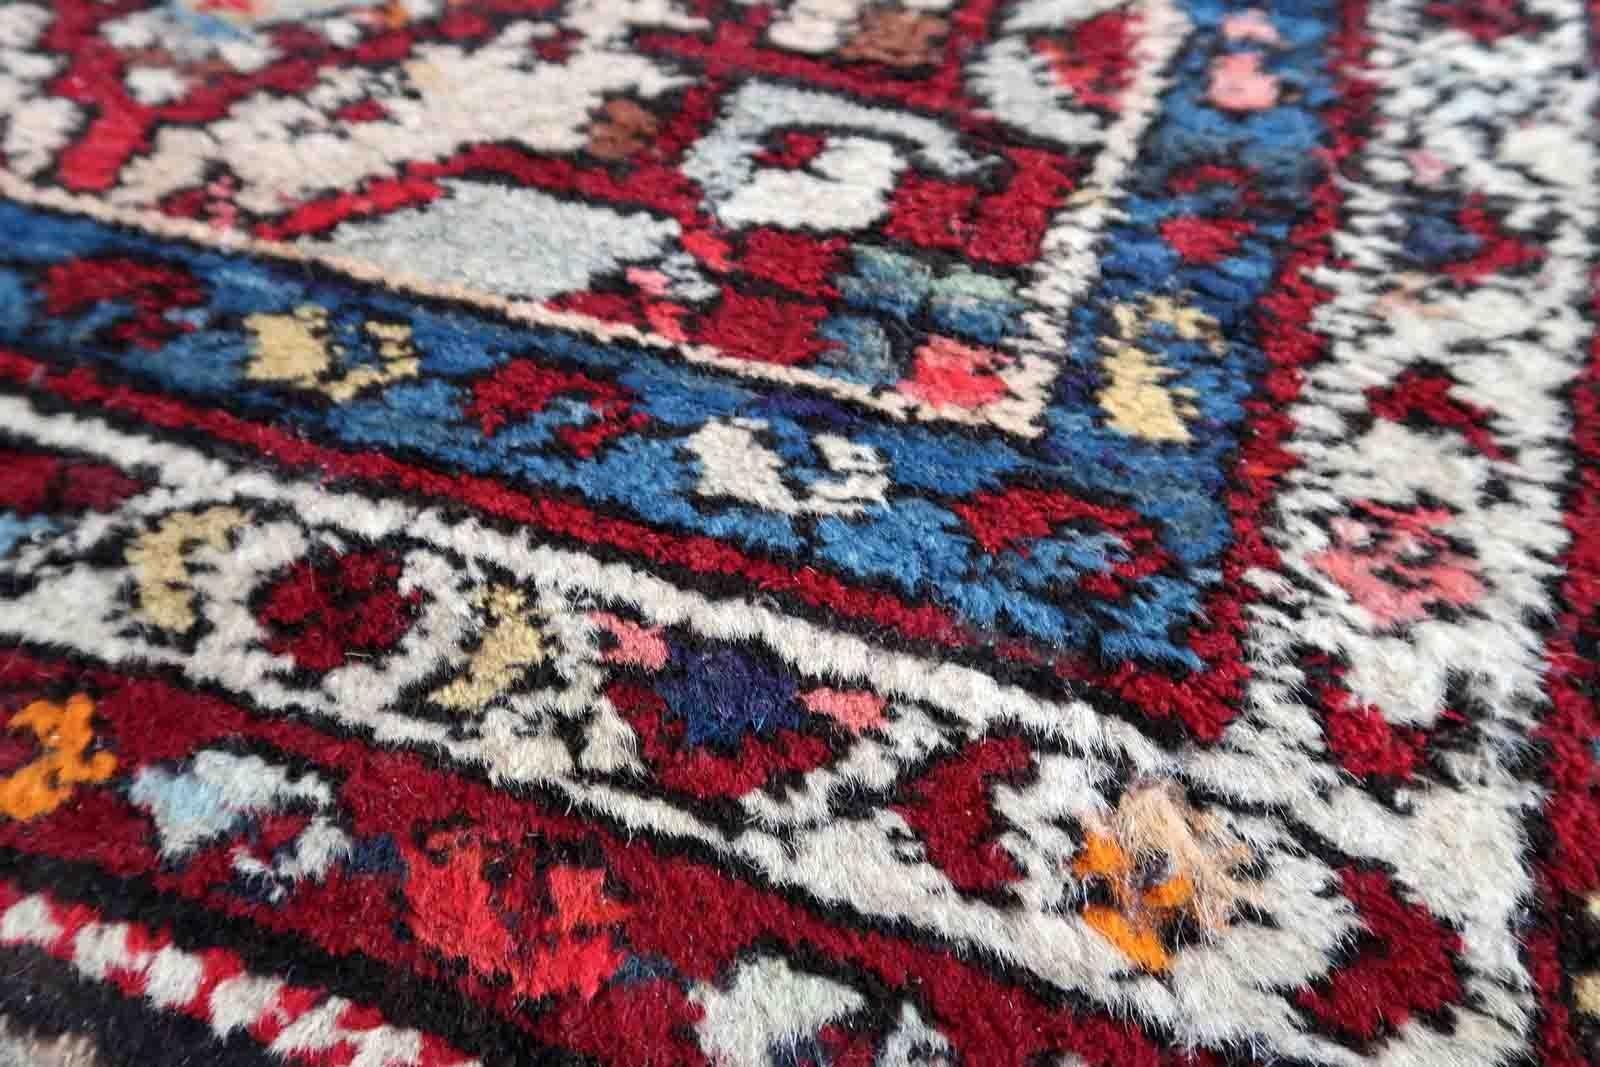 Handgefertigter Malayer-Teppich in roter Farbe. Der Teppich wurde in der Mitte des 20. Jahrhunderts aus Wolle hergestellt. Er ist im Originalzustand, hat aber einige Altersspuren.

-zustand: original, einige Altersspuren,

-etwa: 1970er